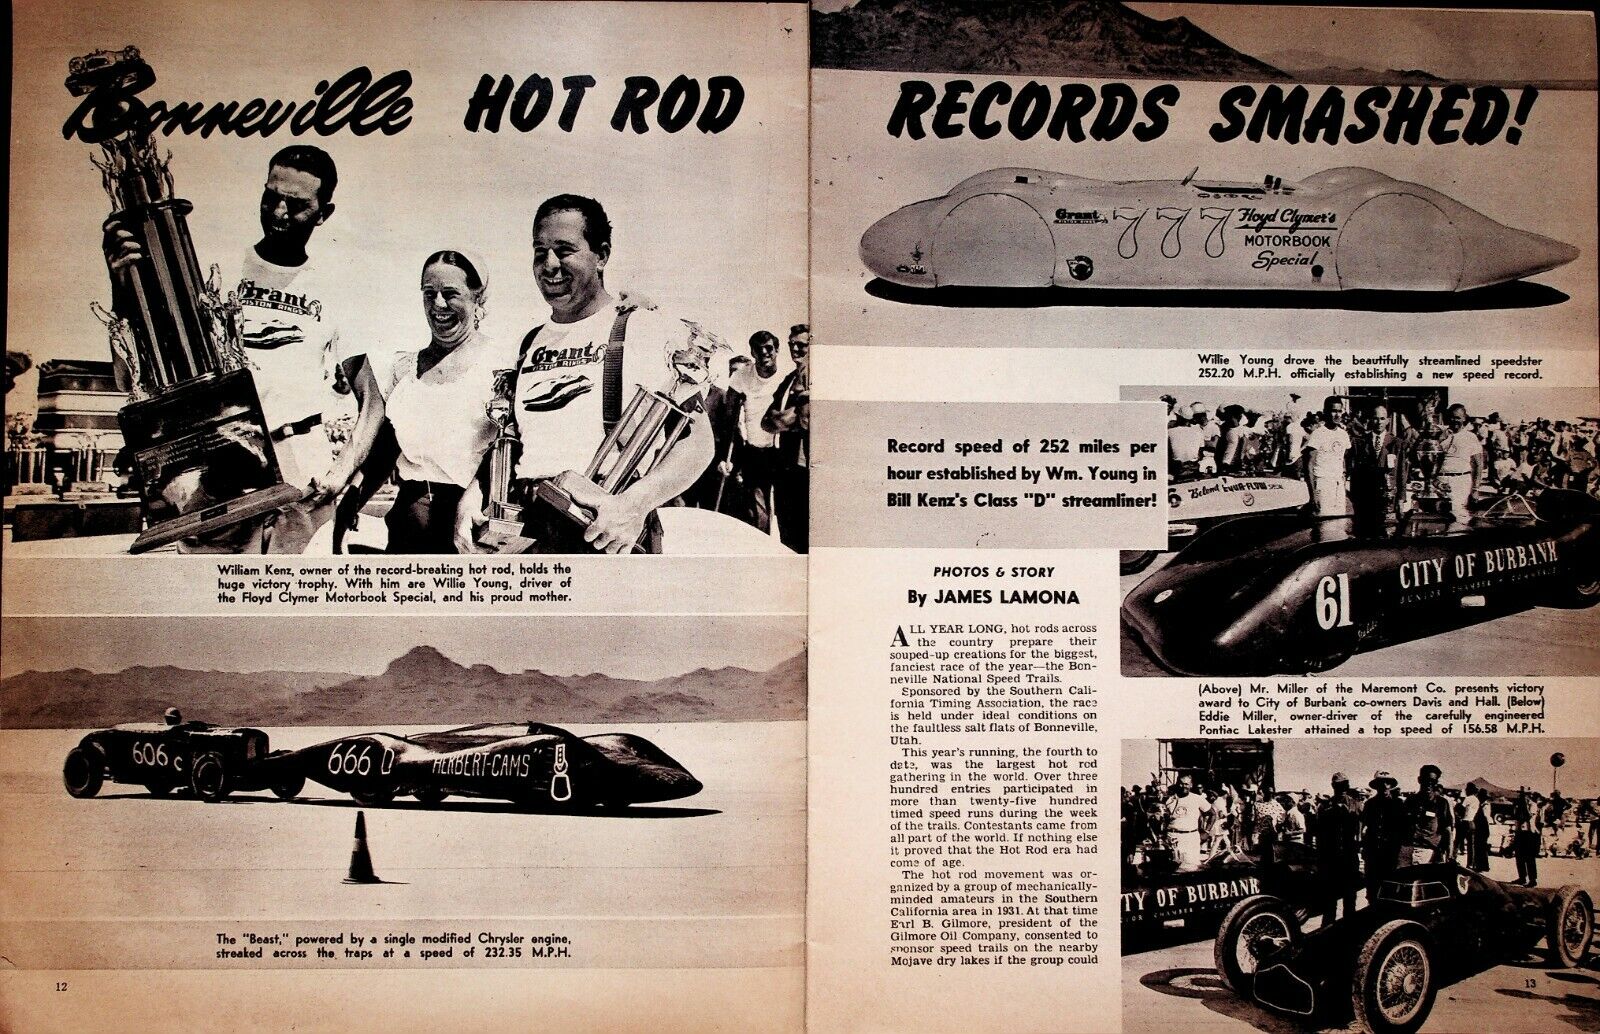 1952 Bonneville Hot Rod Records Smashed - 9-Page Vintage Automobile Article